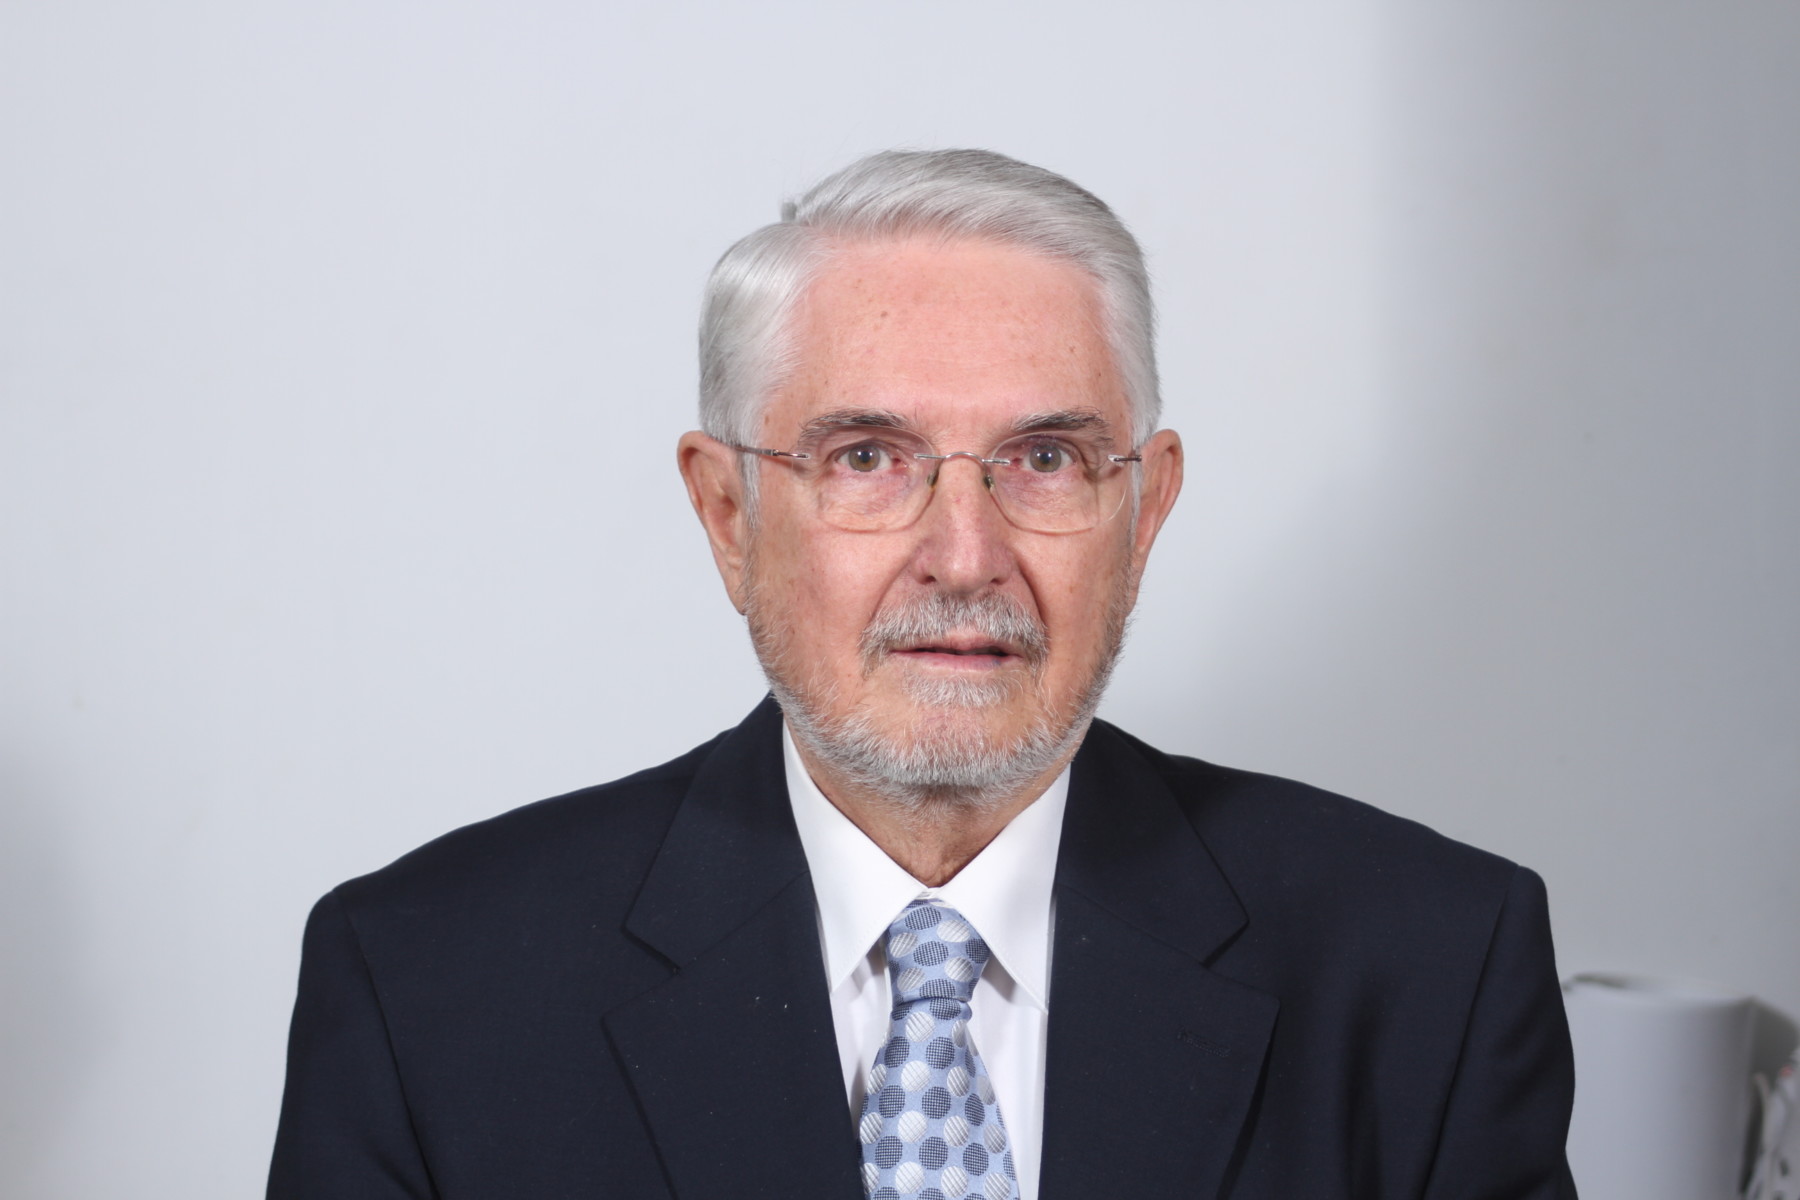 O κ. Φώτης Γραβάνης είναι Ομότιμος Καθηγητής Φυτοπροστασίας του πρώην Τ.Ε.Ι. Θεσσαλίας (νυν Πανεπιστήμιο Θεσσαλίας)